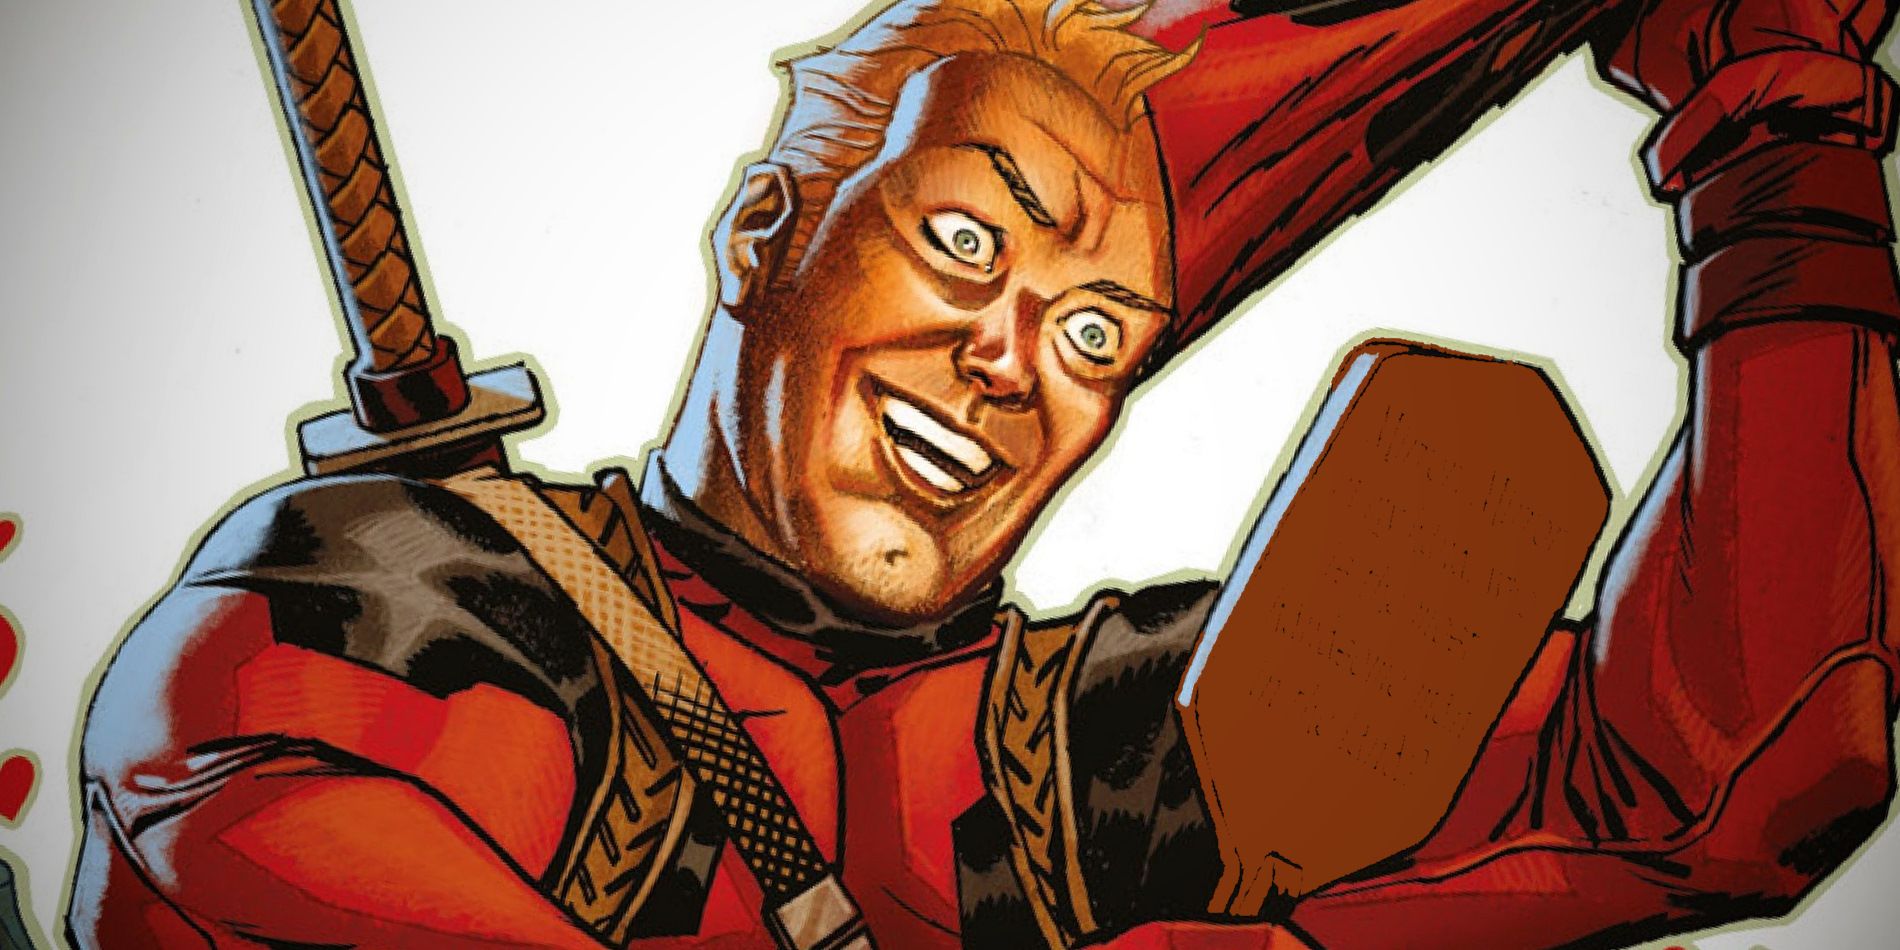 Лицо Дэдпула в конце концов исцелилось в комиксах Marvel.